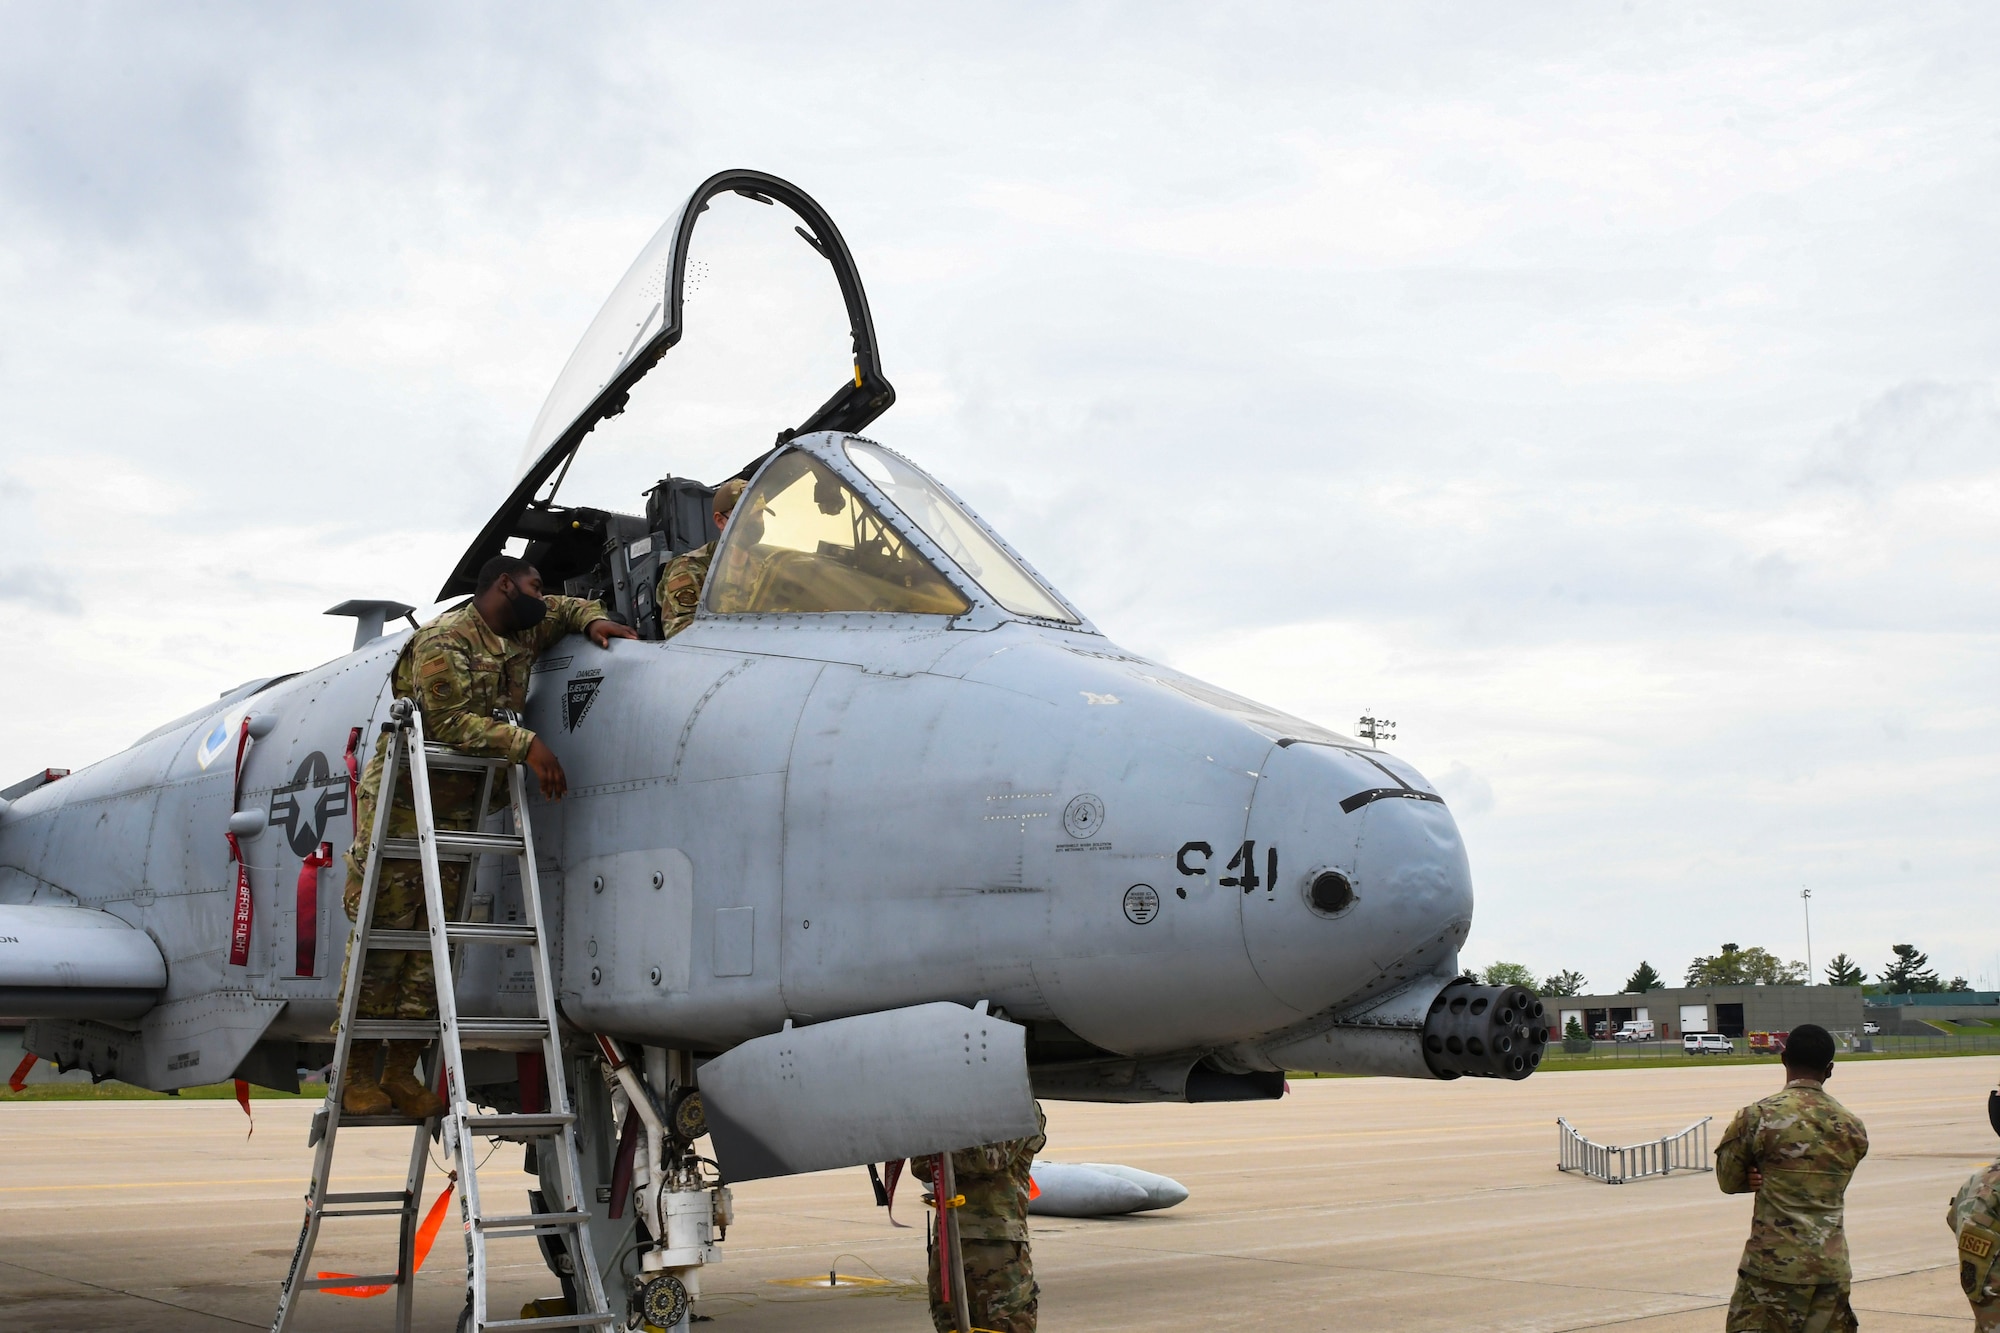 A photo of an airmen on a ladder climbing into a jet